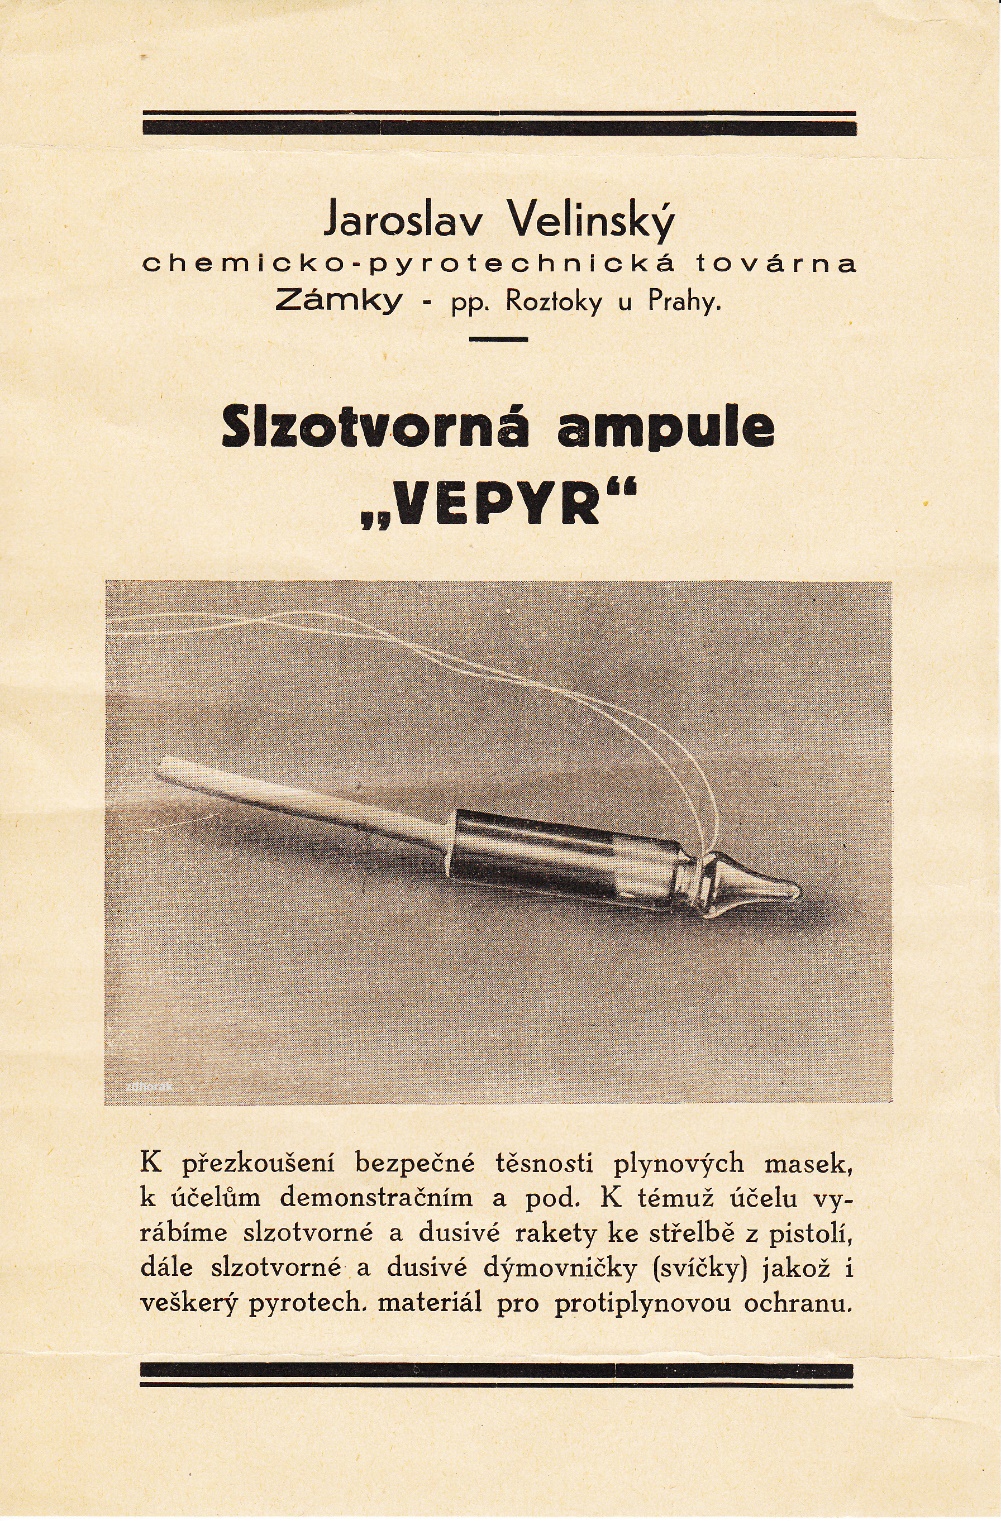 Československá výroba V předválečném Československu tyto ampule vyráběla fy.